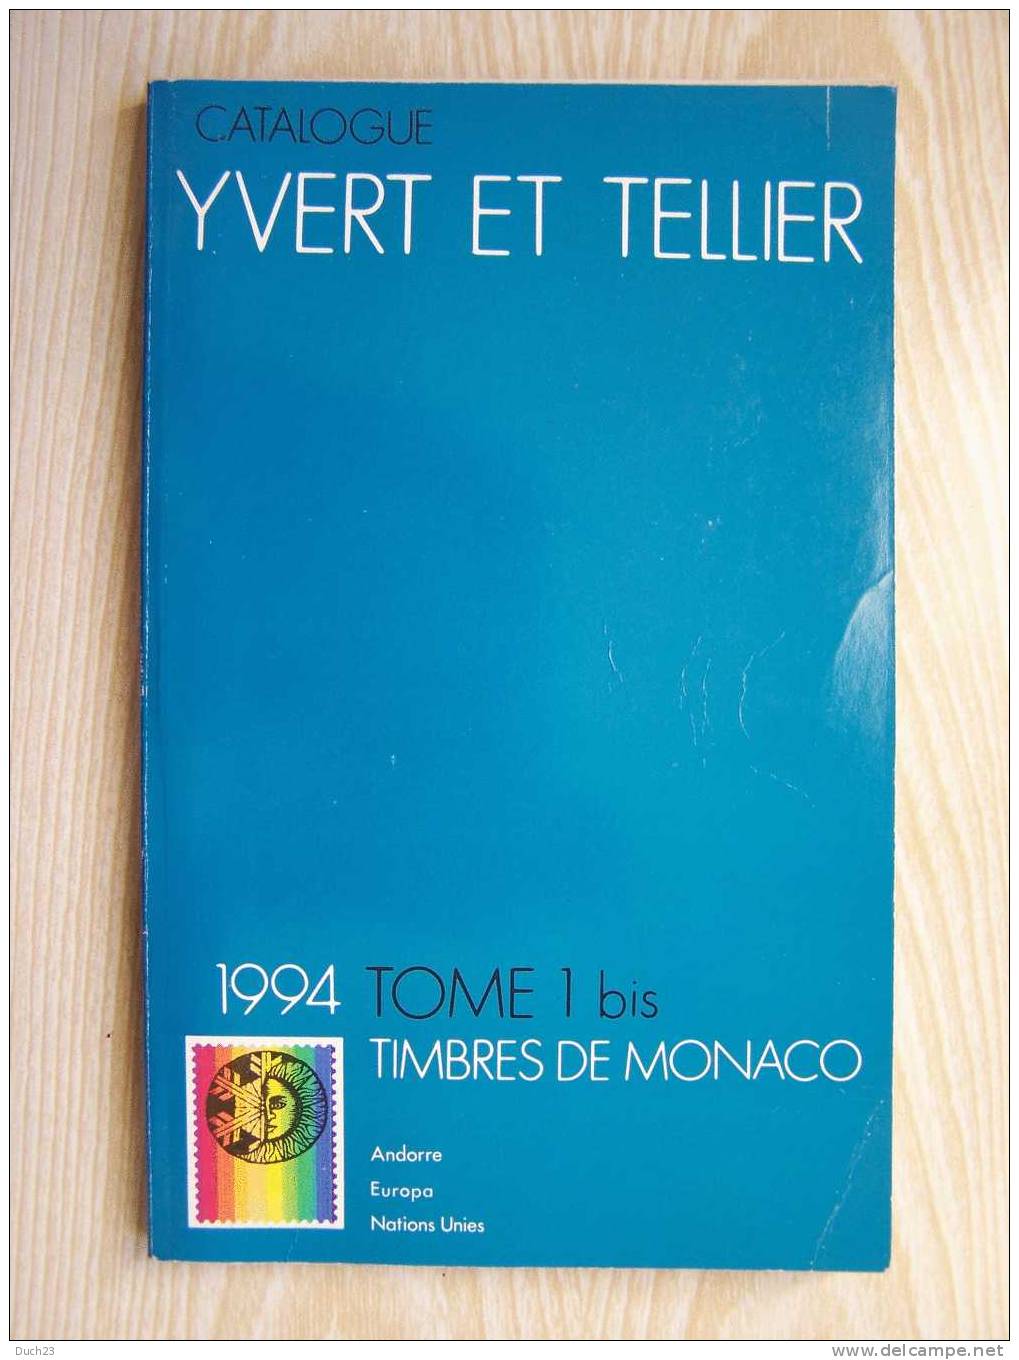 CATALOGUE DE COTATION YVERT ET TELLIER ANNEE 1994 TOME 1 BIS  TRES BON ETAT   REF CD - Frankreich